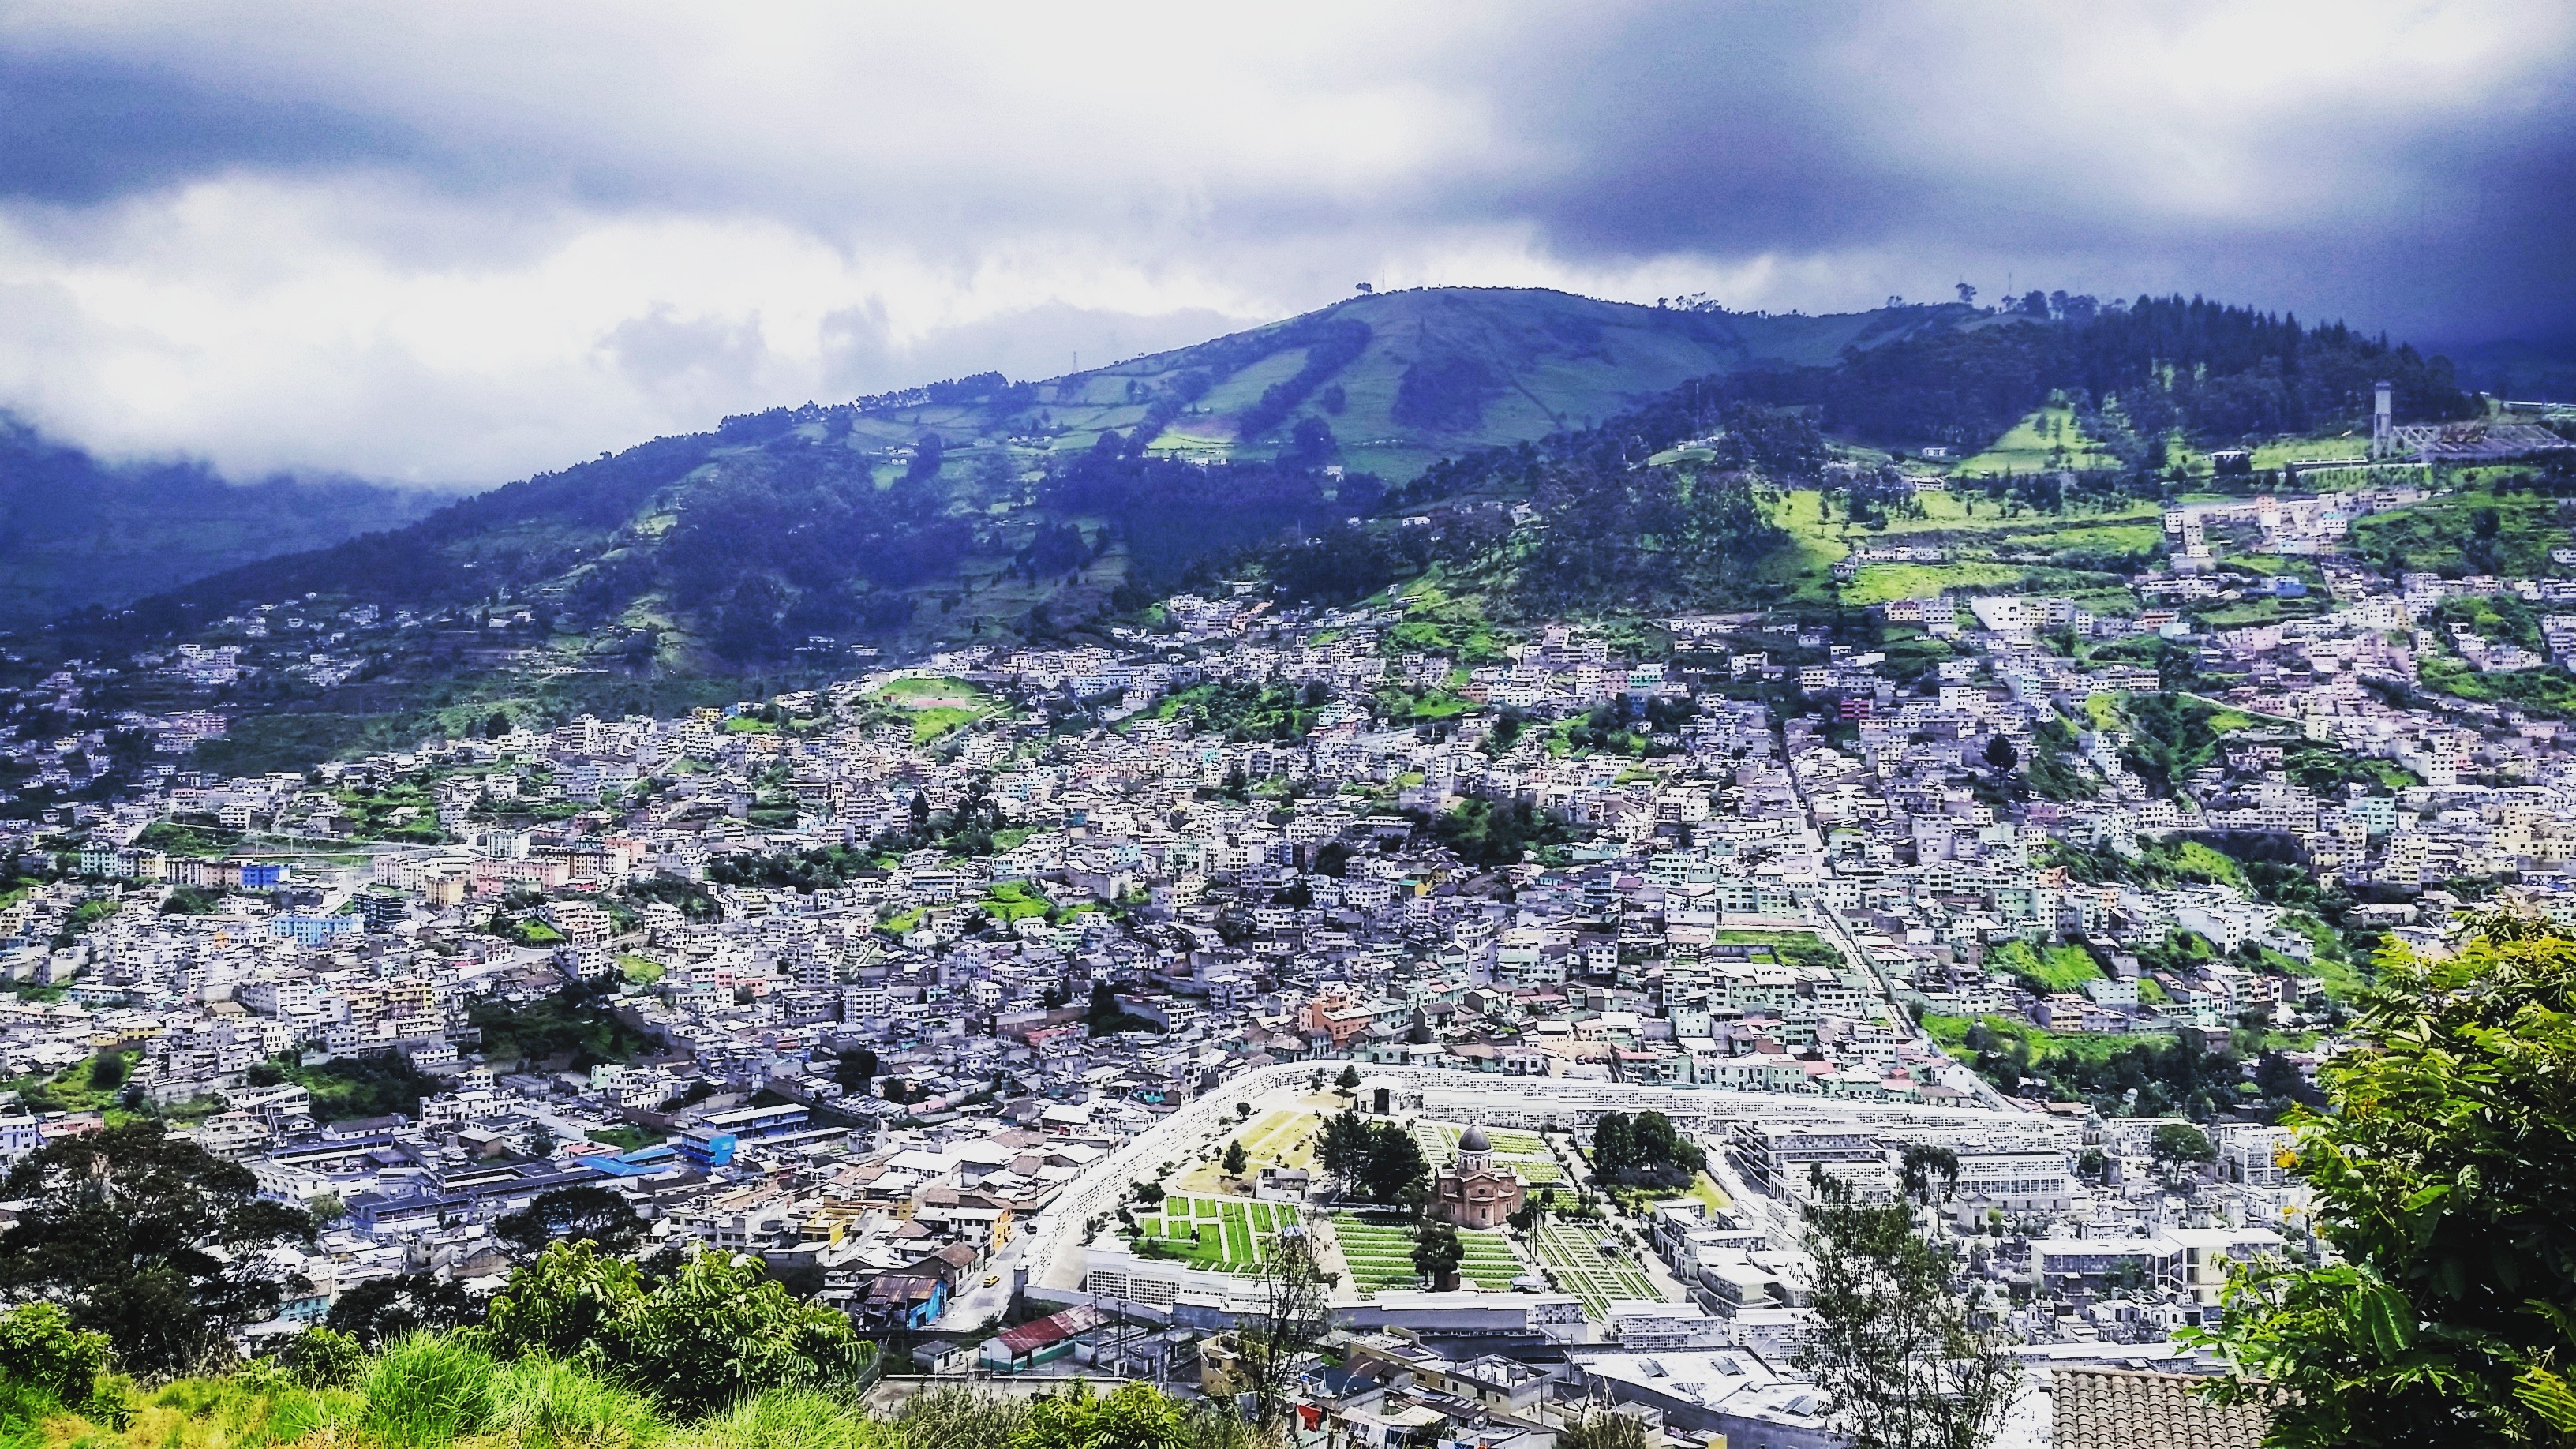 The city of Quito- Ecuador's capital